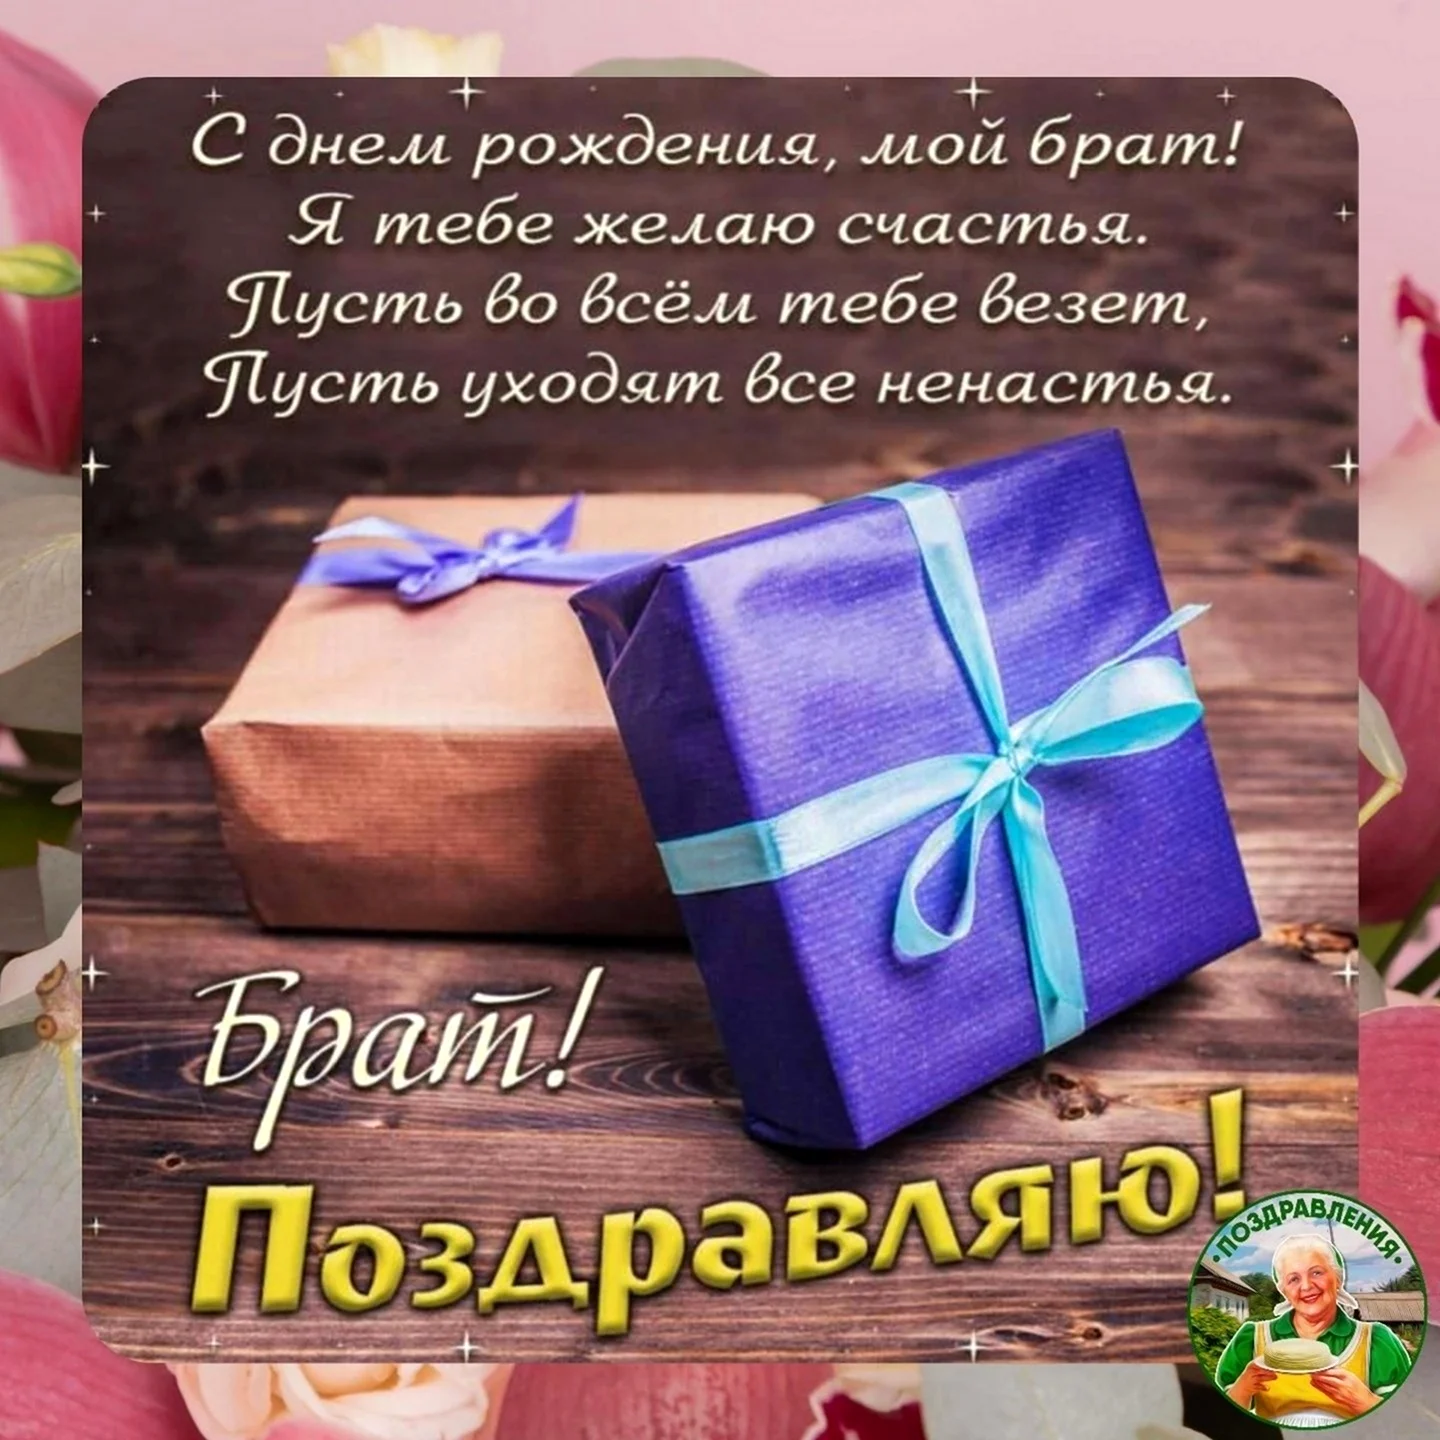 Поздравления с днем рождения брату | ВКонтакте